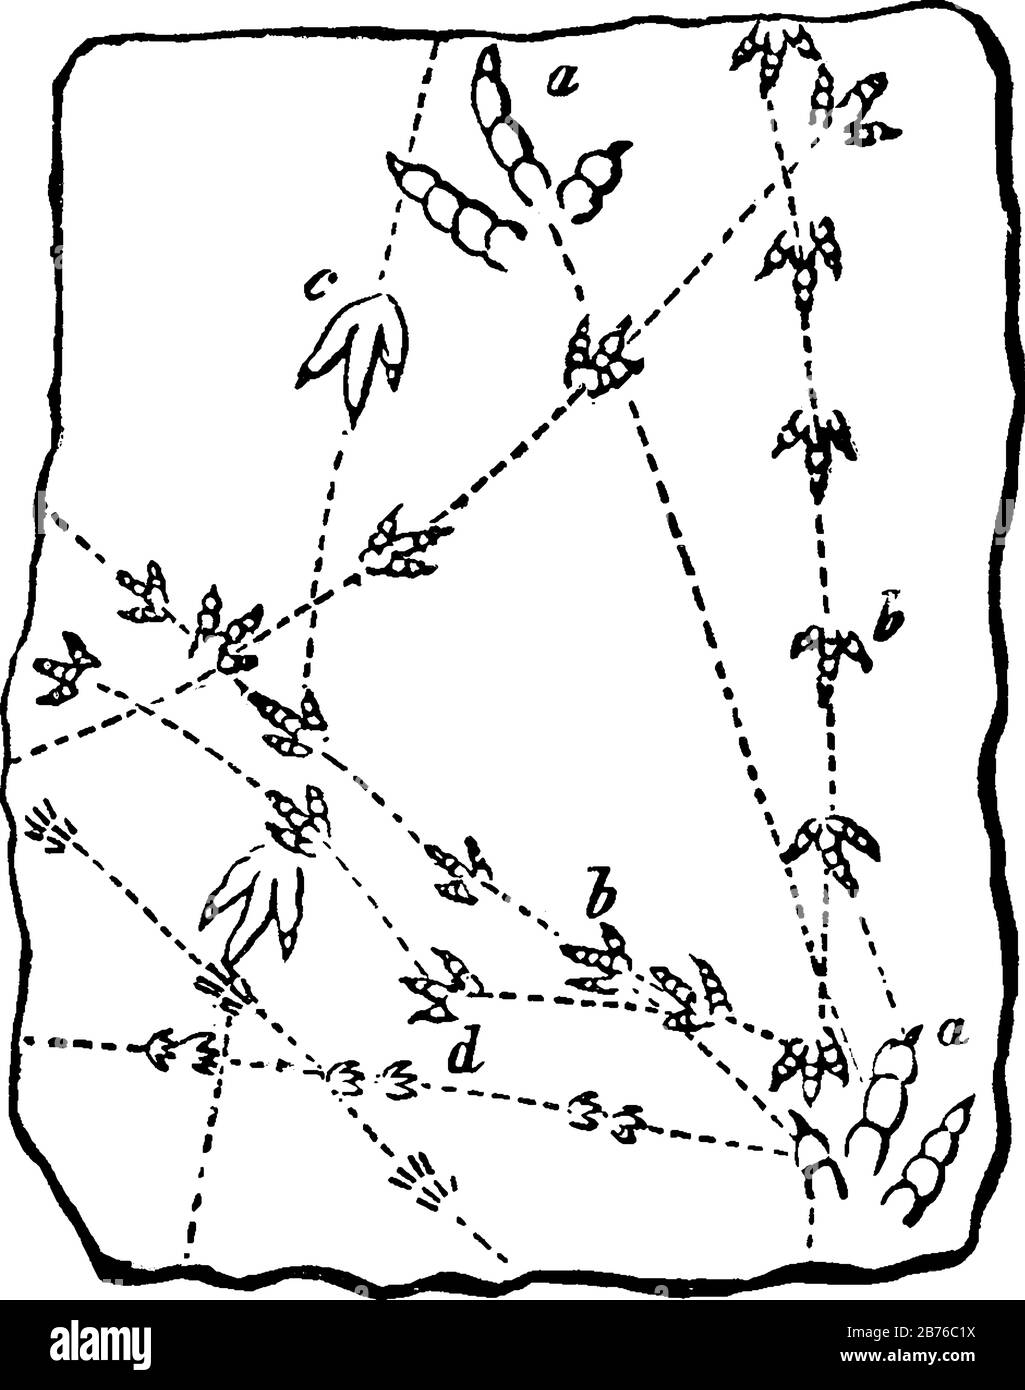 Spuren, auf denen die drei geodeten Spuren von Vögeln und Reptilien, Vintage-Linien-Zeichnung oder Gravier-Illustration zu sehen sind. Stock Vektor